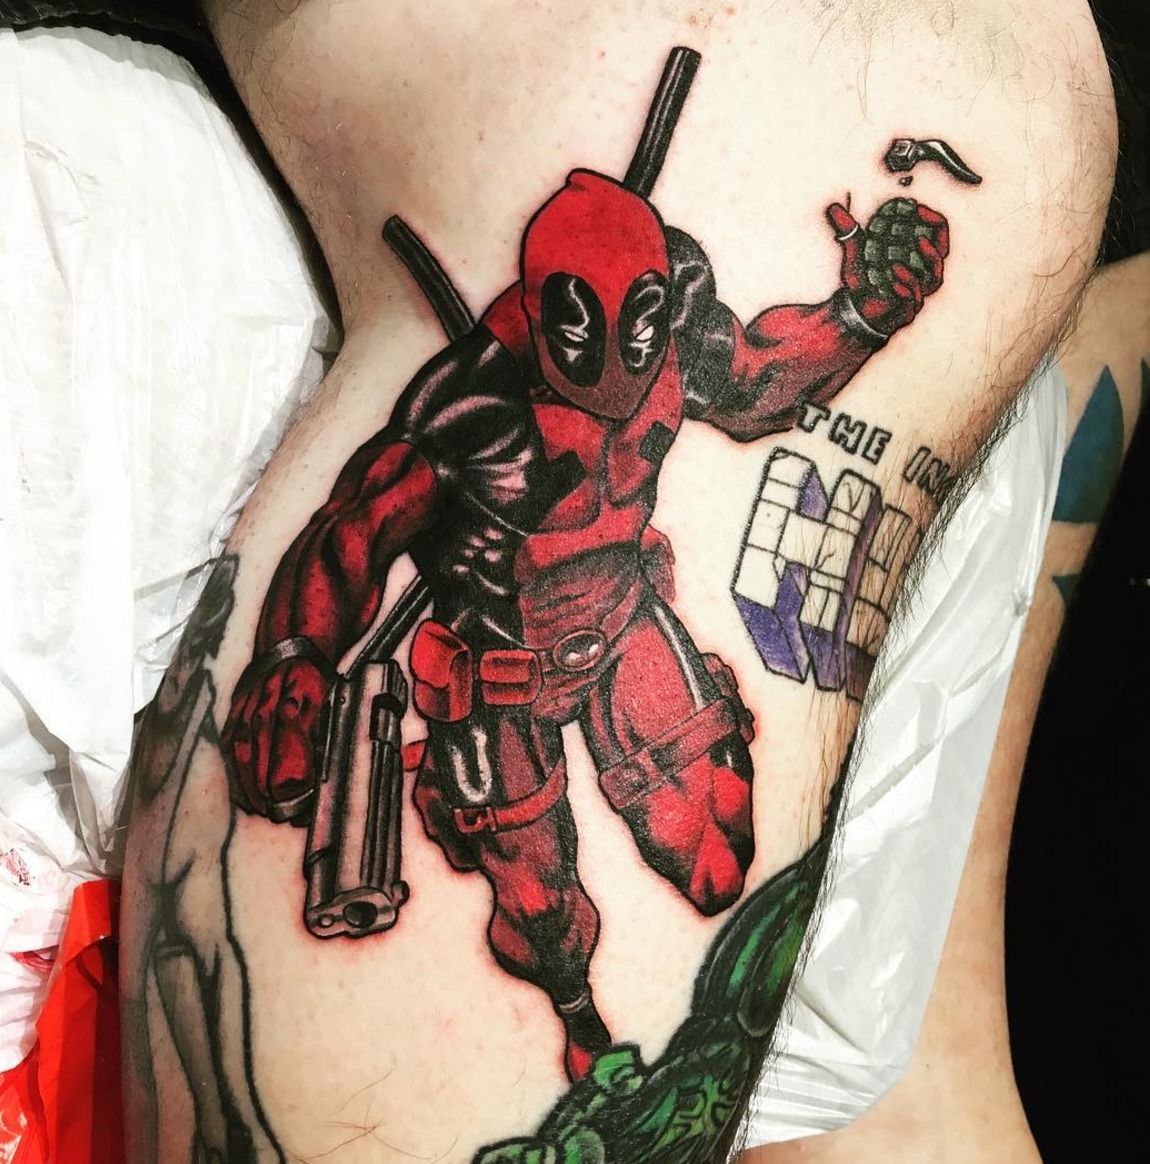 Dragonspawn Tattoo - Full Leg Tattoo Marvel by @mac_bob_tattoo | Facebook